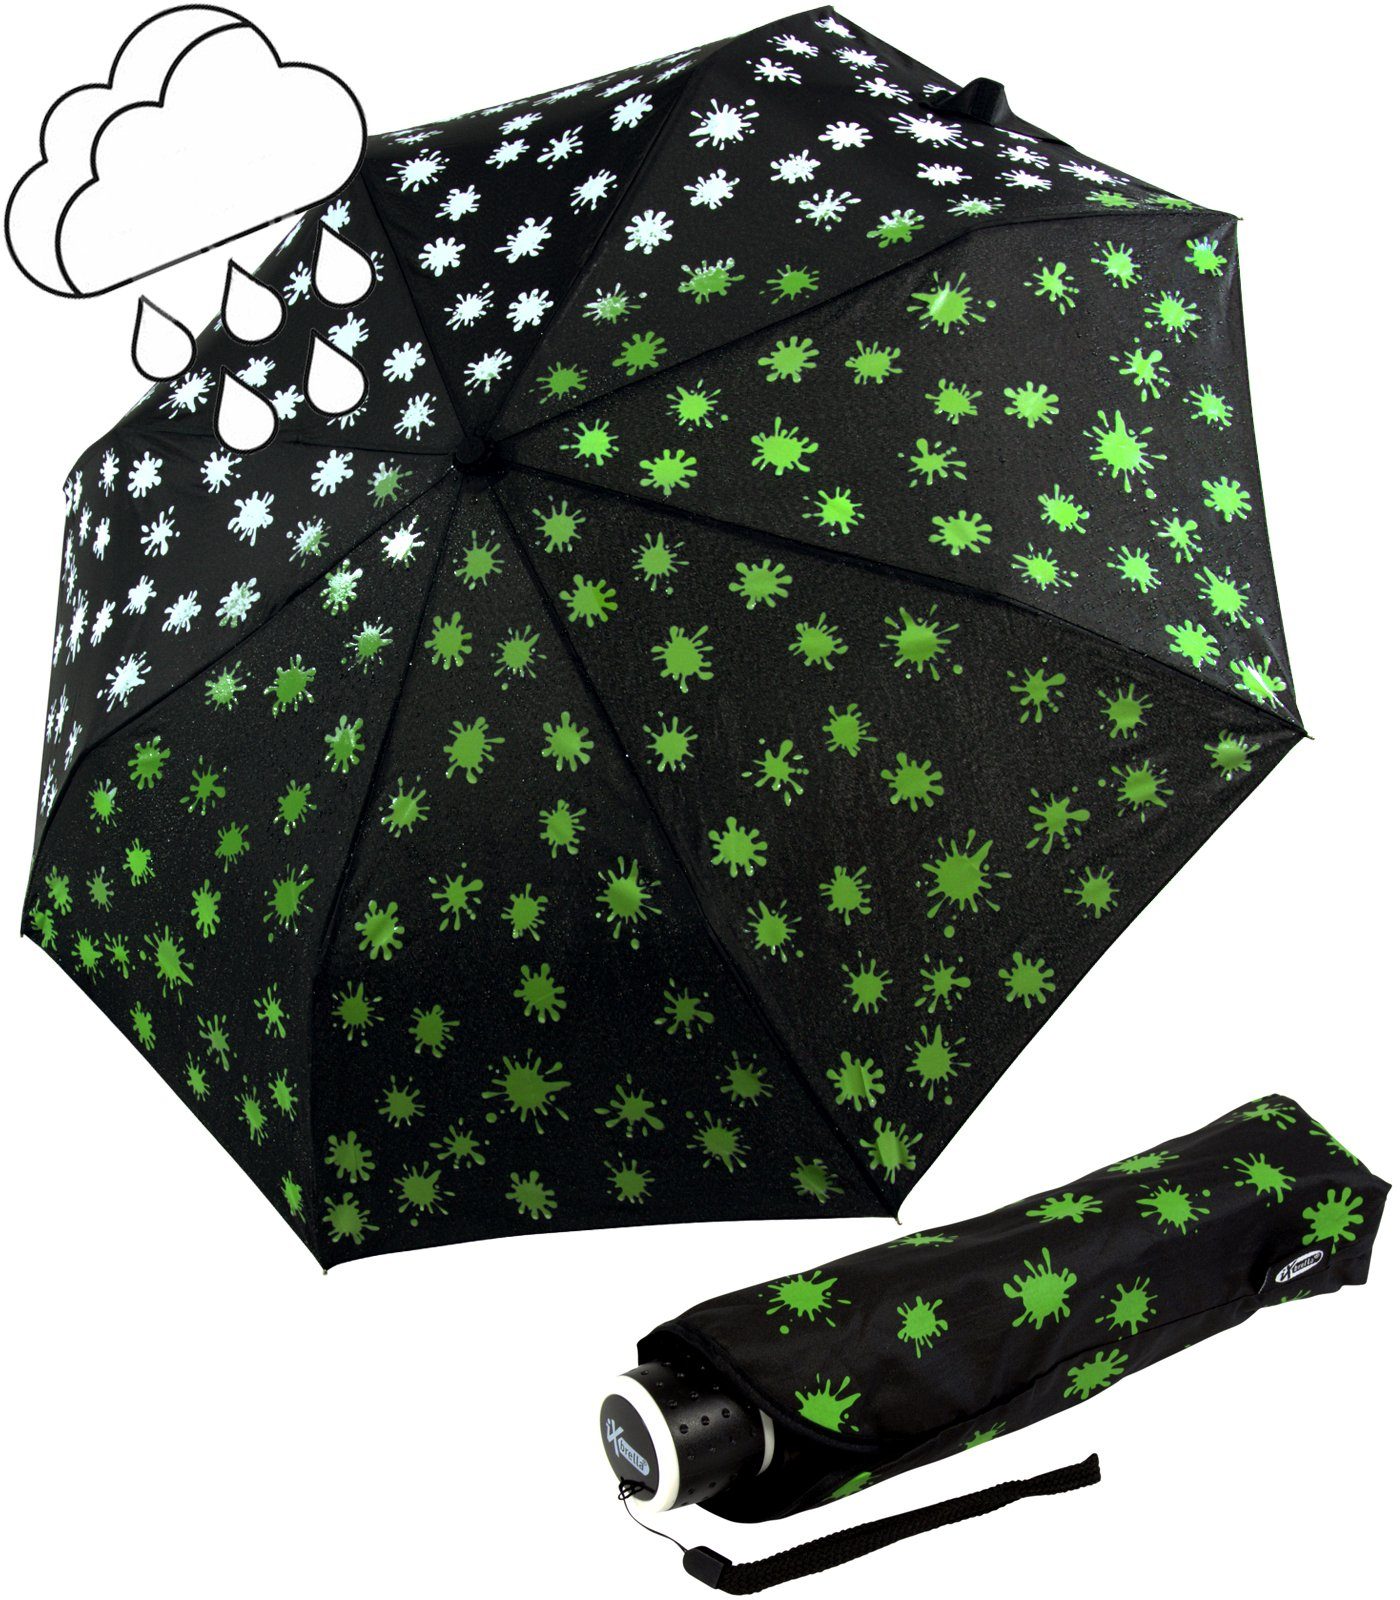 iX-brella Taschenregenschirm Mini Ultra Light - mit großem Dach - extra leicht, Farbänderung bei Nässe - Farbkleckse neon-grün schwarz-weiß-neongrün | Taschenschirme